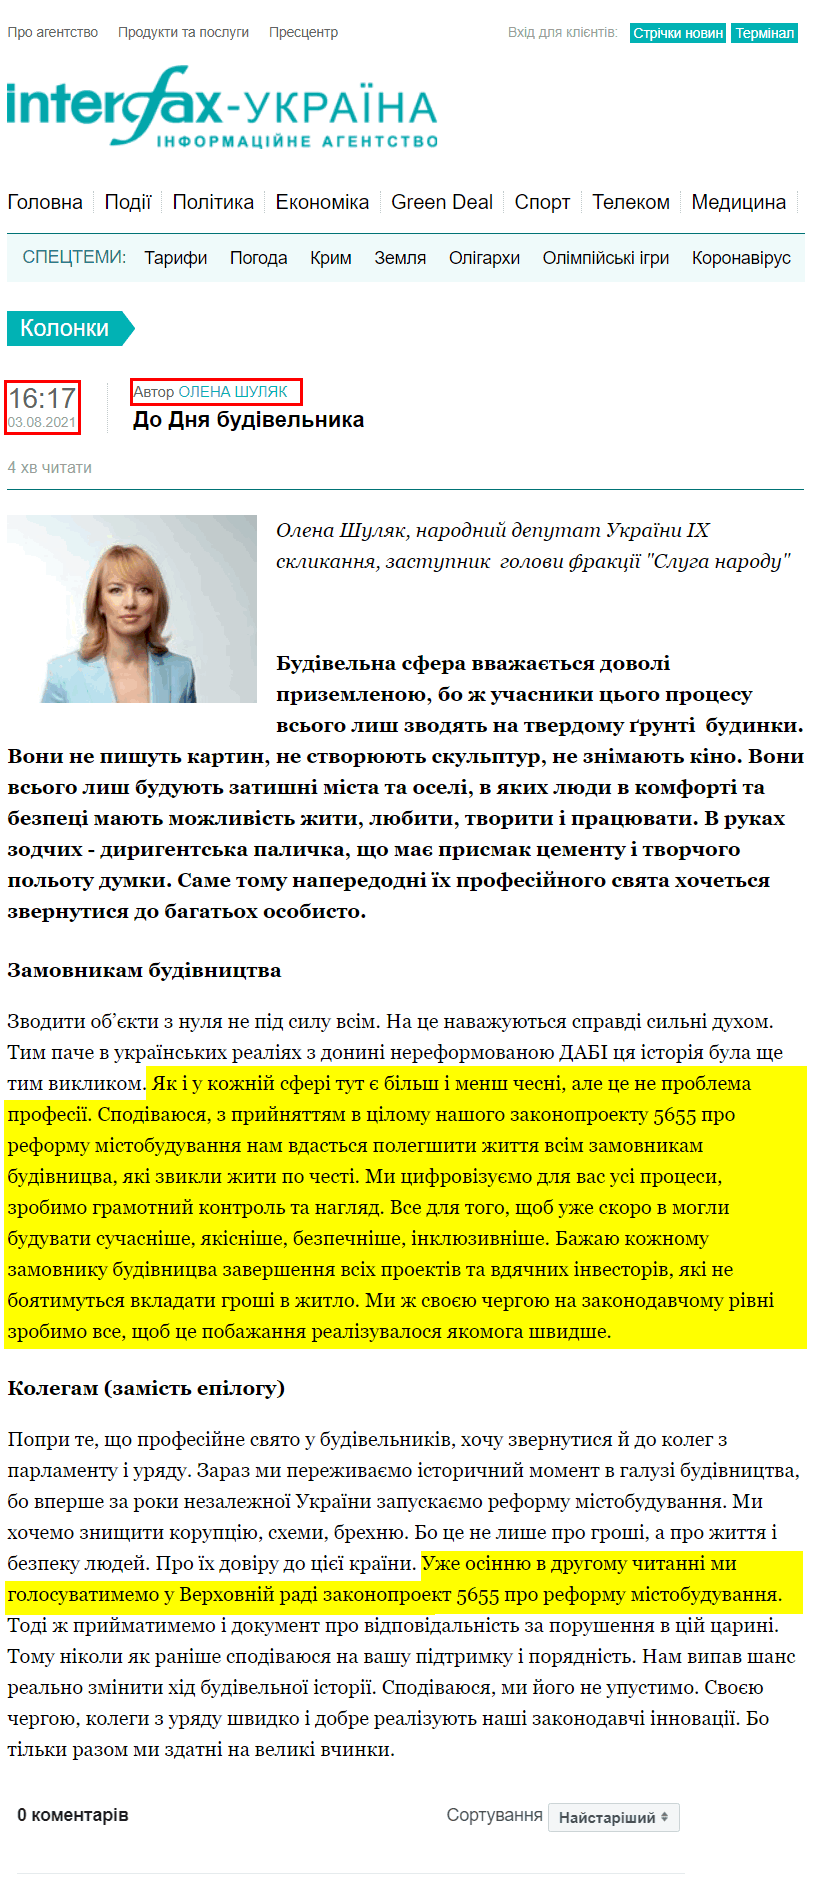 https://ua.interfax.com.ua/news/blog/759332.html